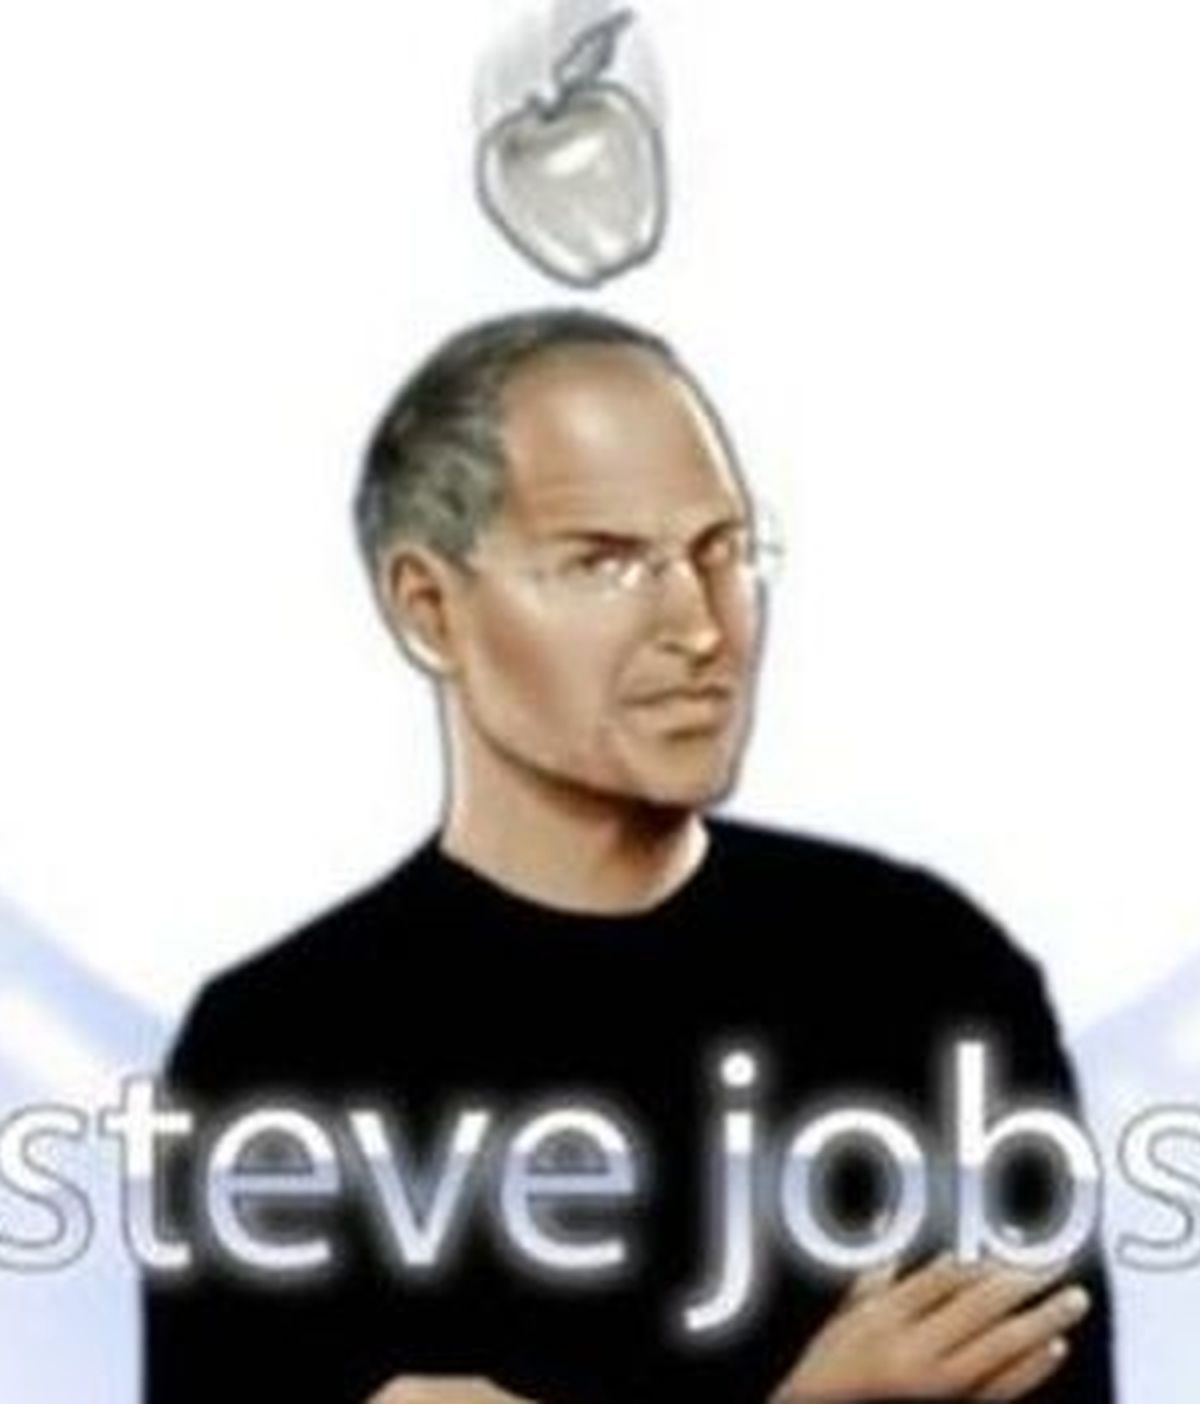 Uno de los dibujos que representa a Steve Jobs en su cómic.